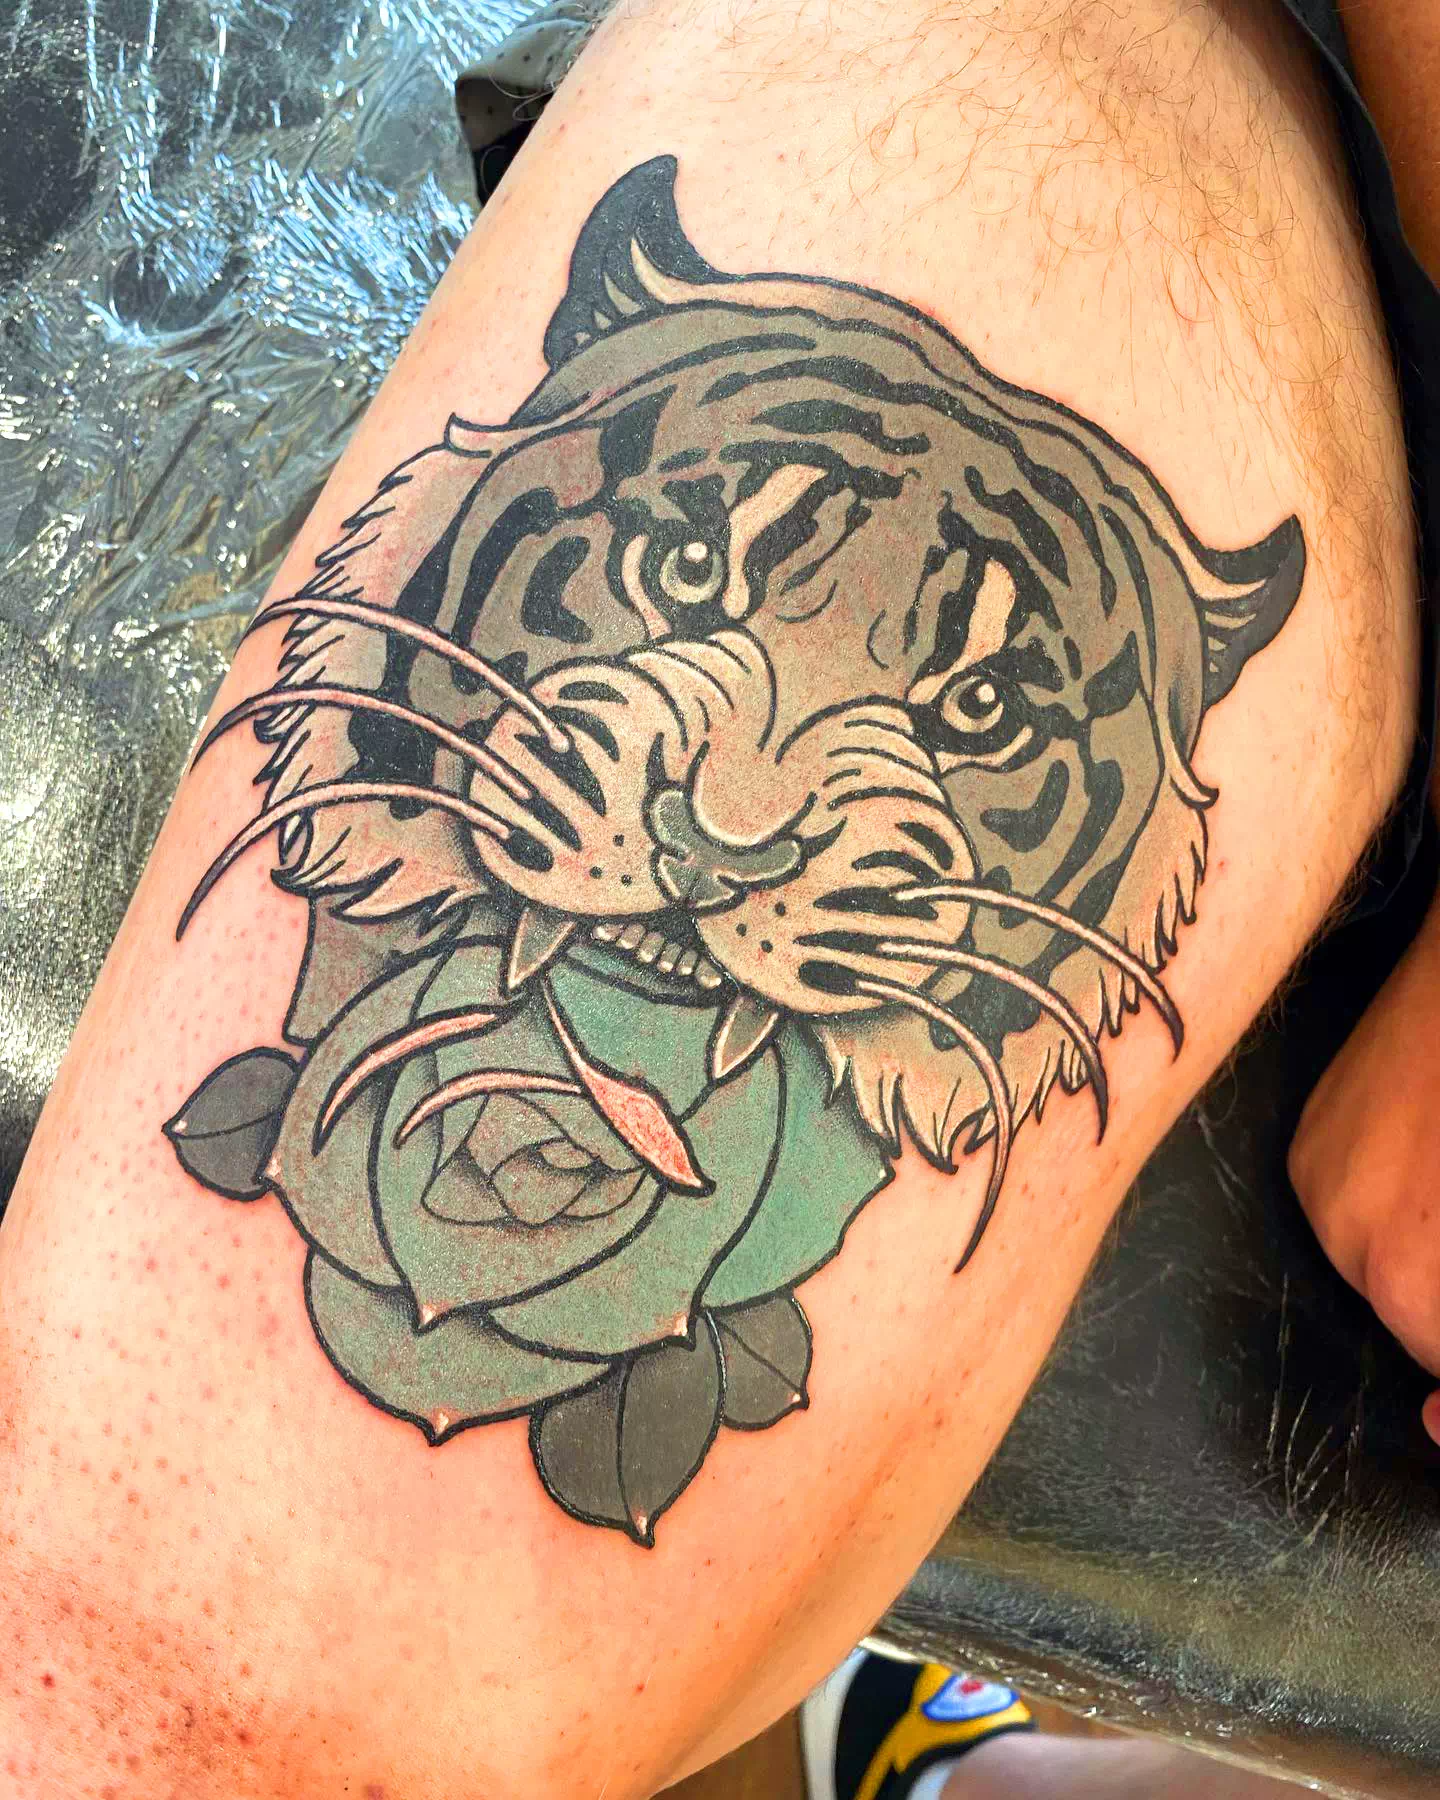 Tatuaje de la pantorrilla del tigre azul 1